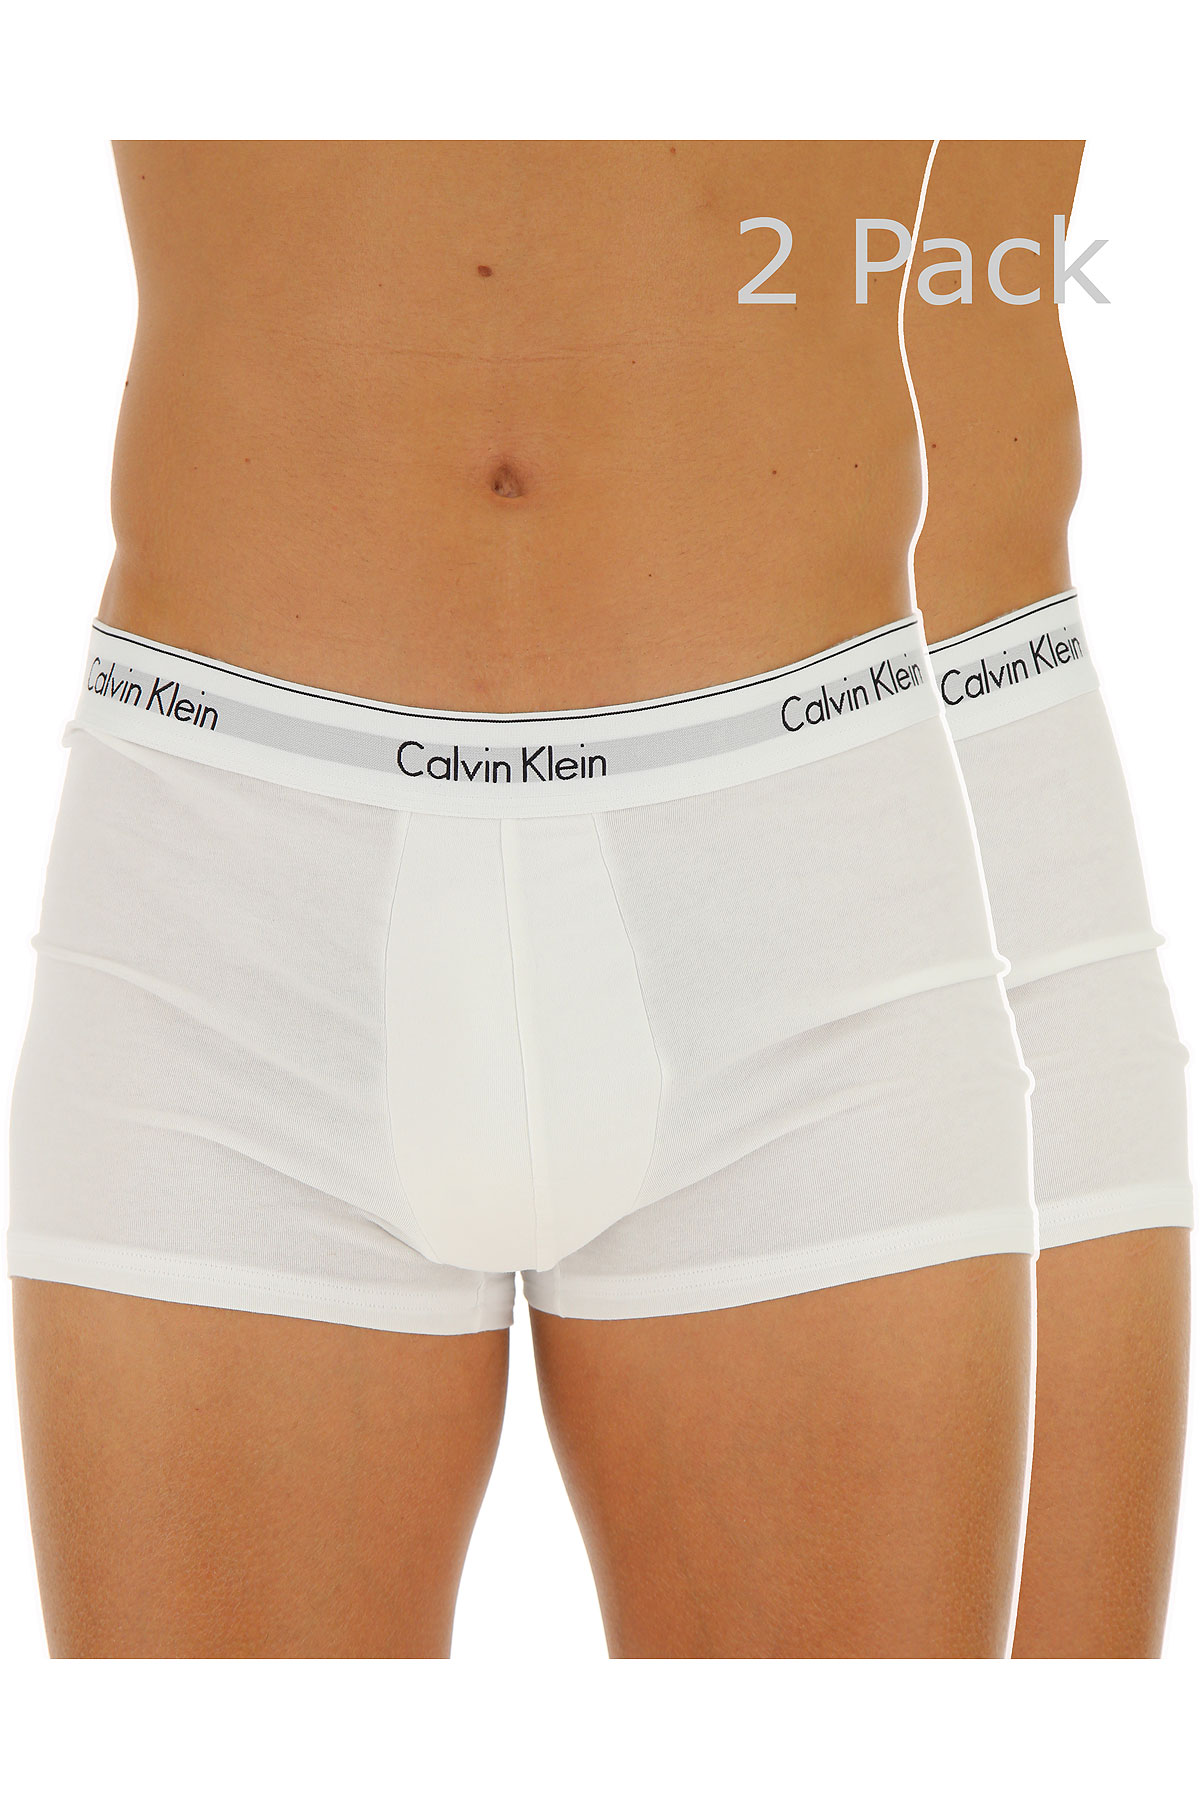 Calvin Klein Boxer Shorts für Herren, Unterhose, Short, Boxer Günstig im Sale, 2 Pack, Weiss, Baumwolle, 2017, L M S XL